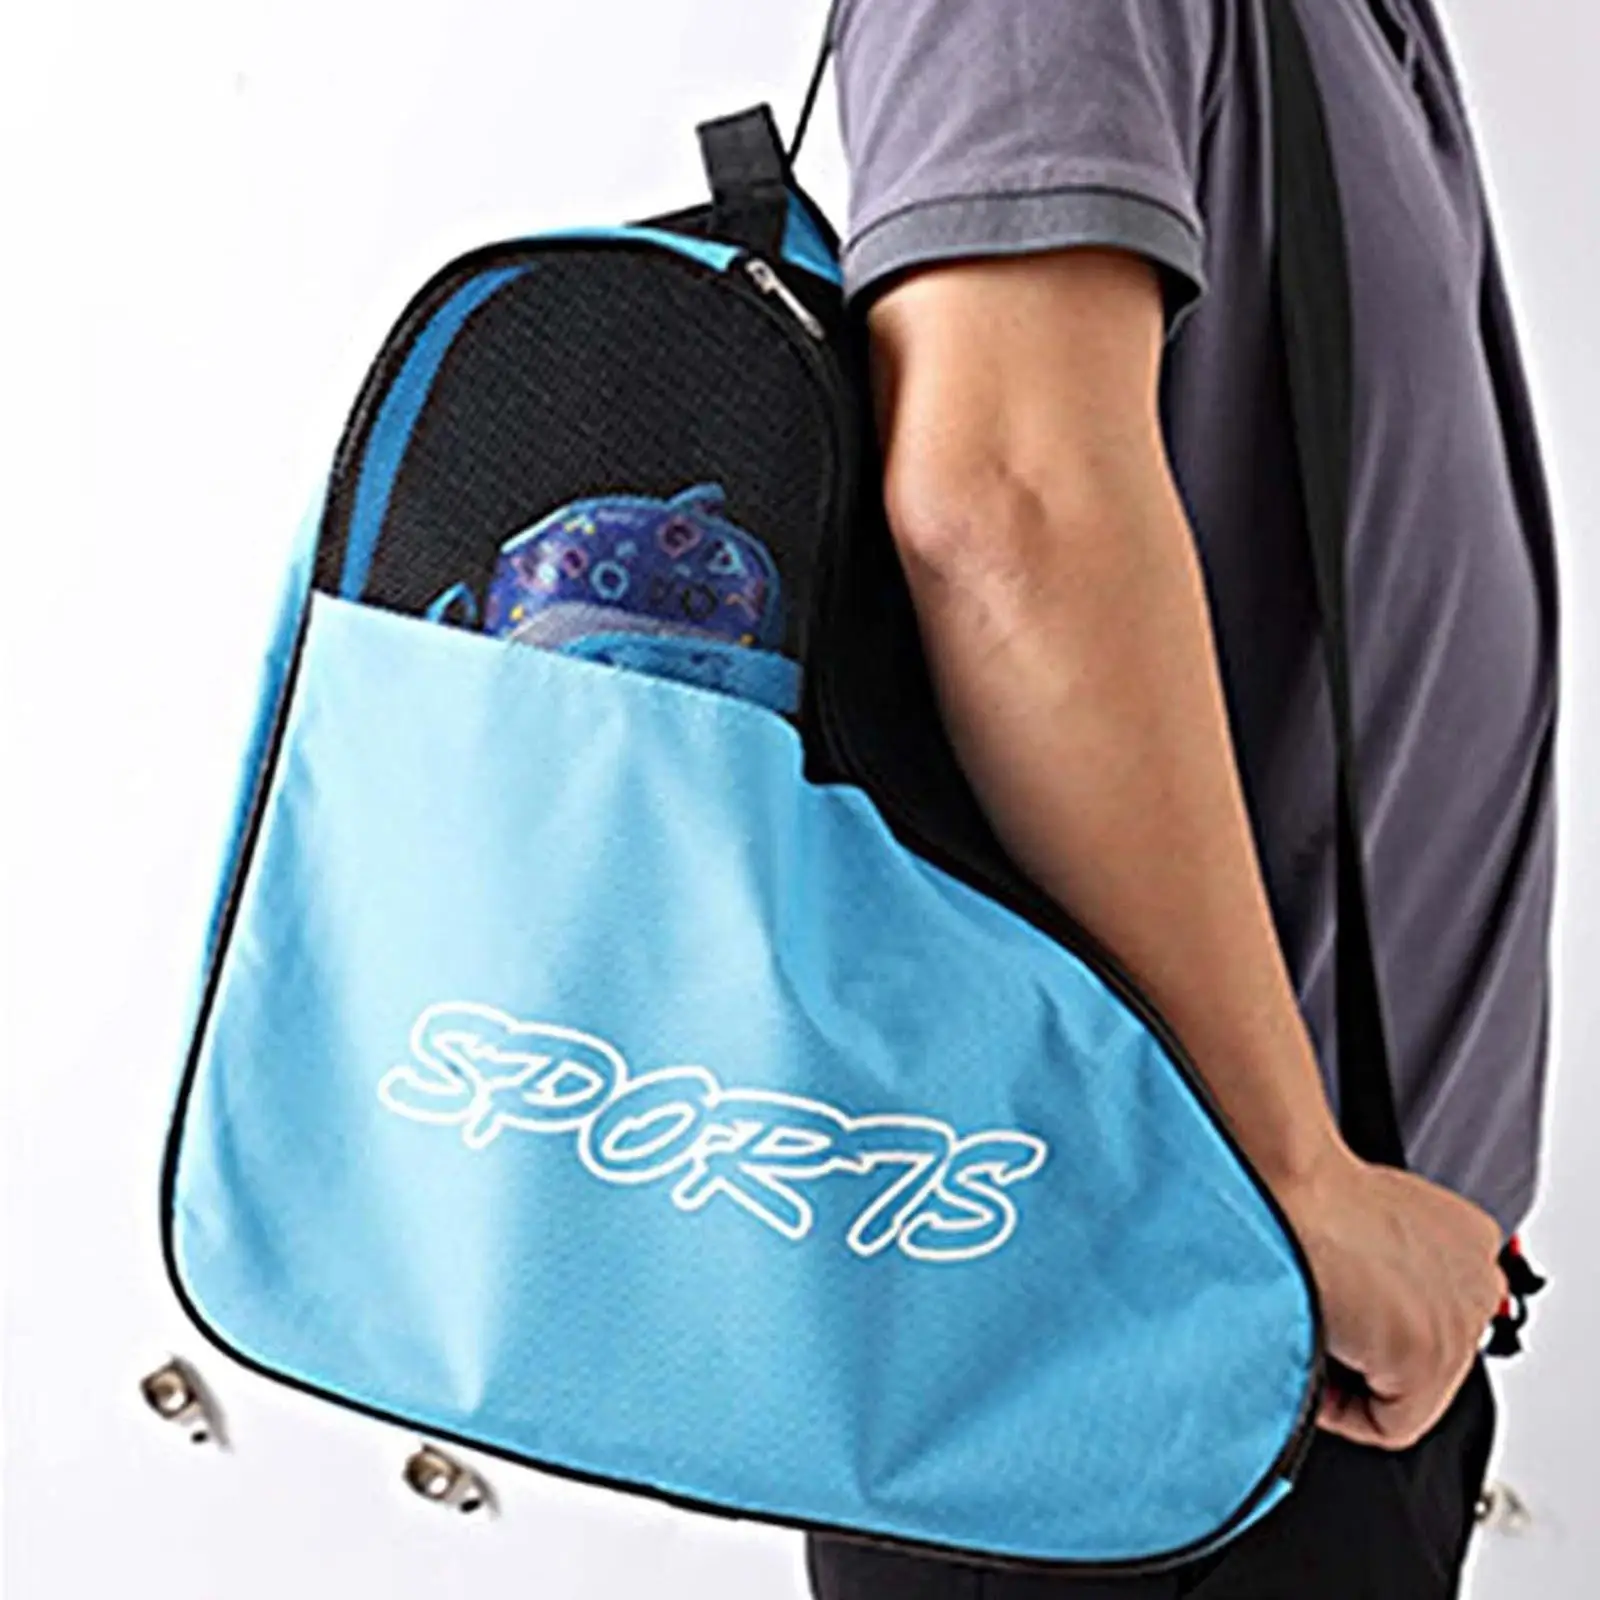 Roller Skate Bag Portable Roller Skate Carrier Skate Carry Bag for Figure Skates Ice Hockey Skate Inline Skates Quad Skates